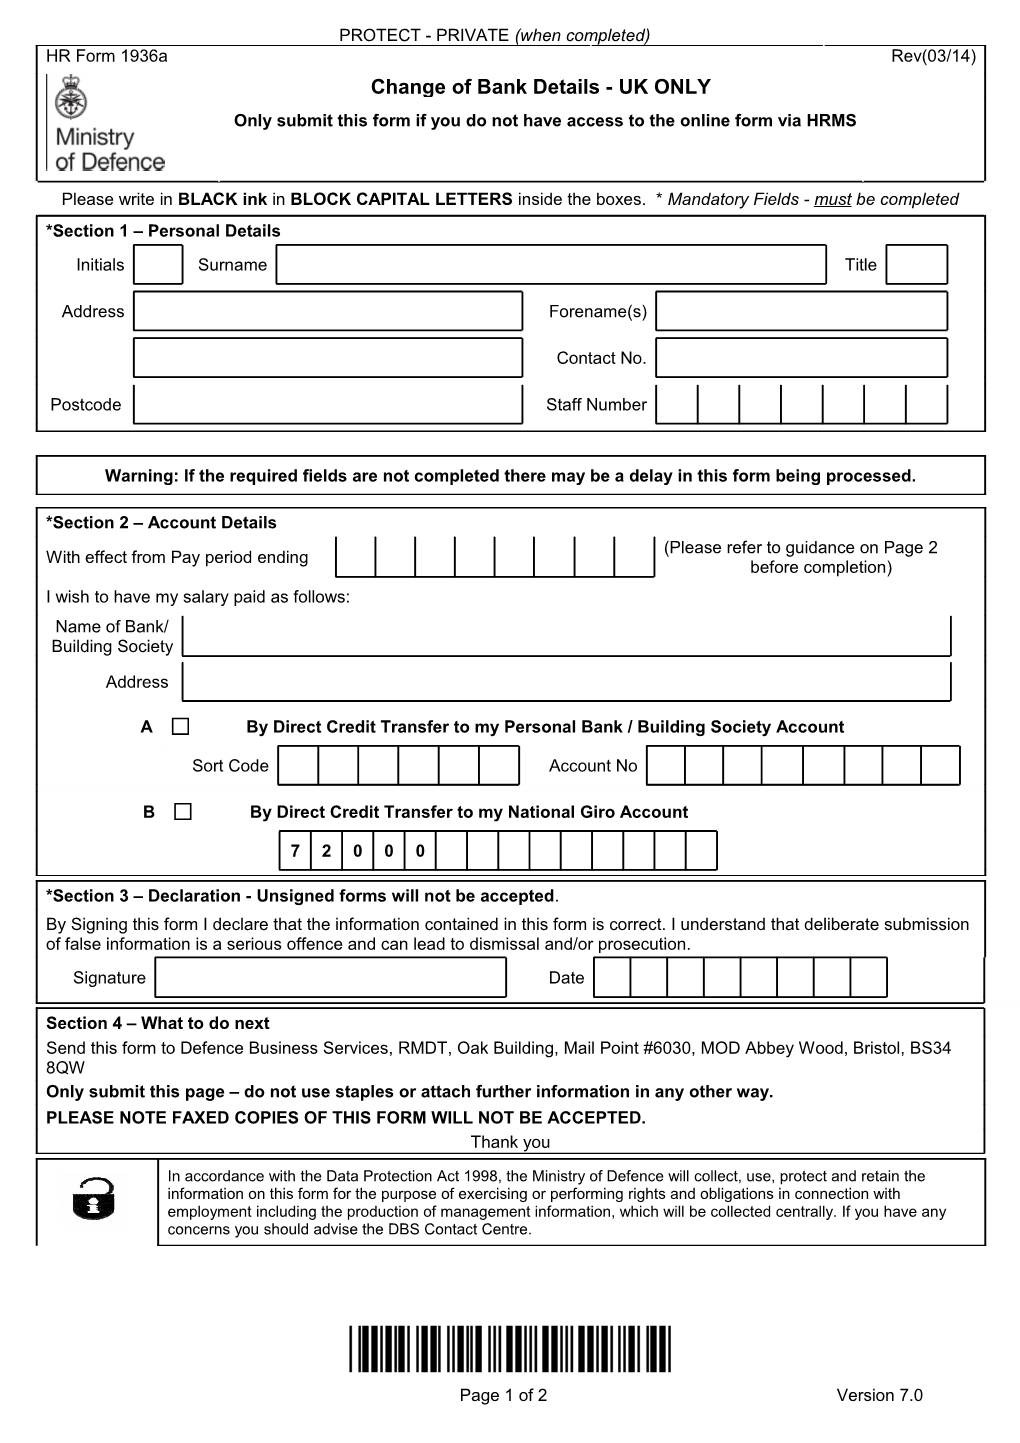 HR Form 1936A: Change of Bank Details